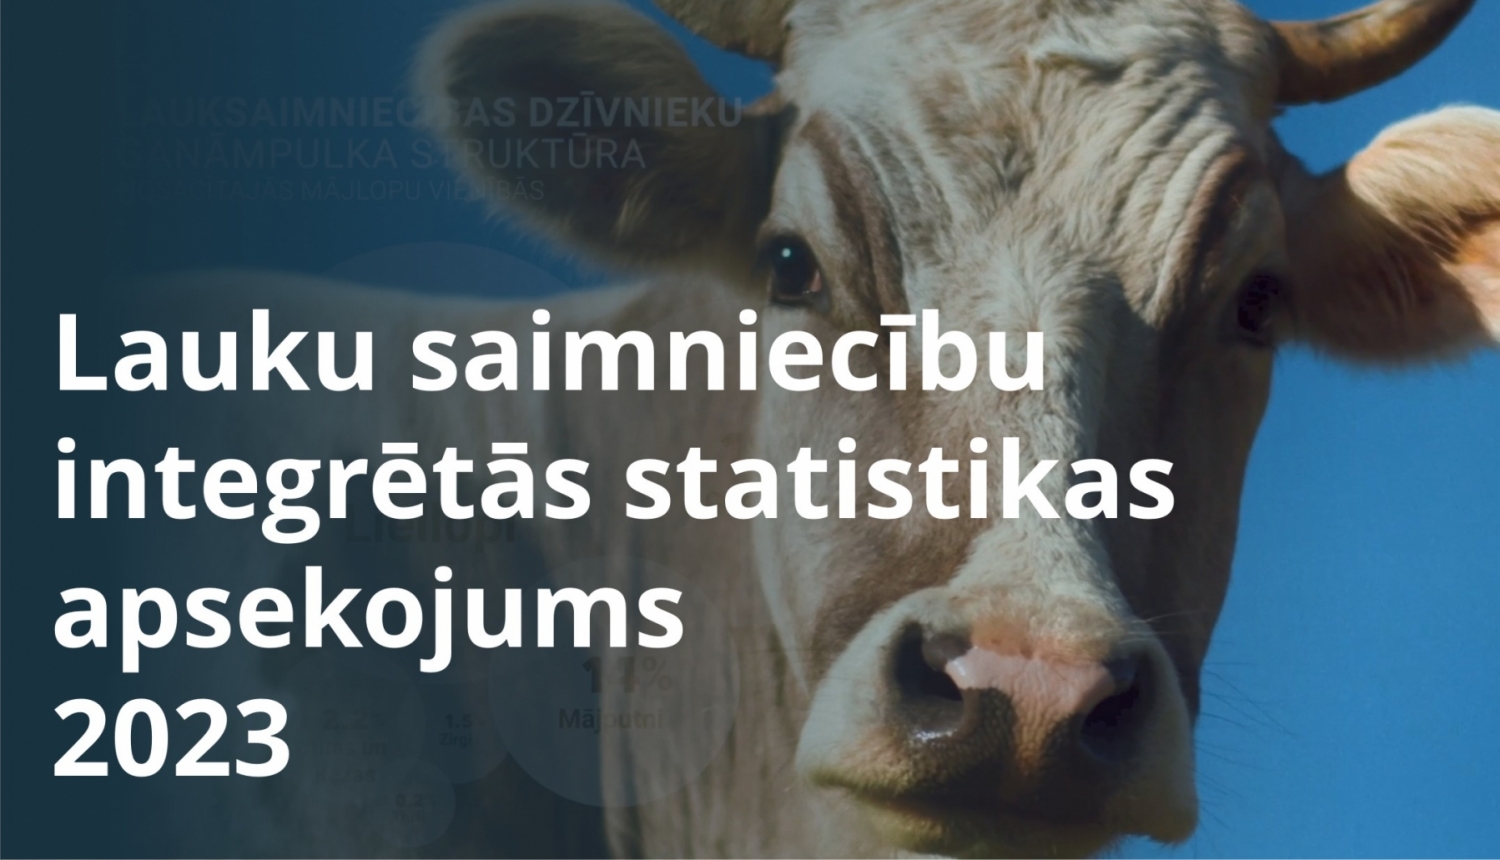 Attēls ar govi un tekstu: "Lauku saimniecību integrētās statistikas apsekojums 2023"